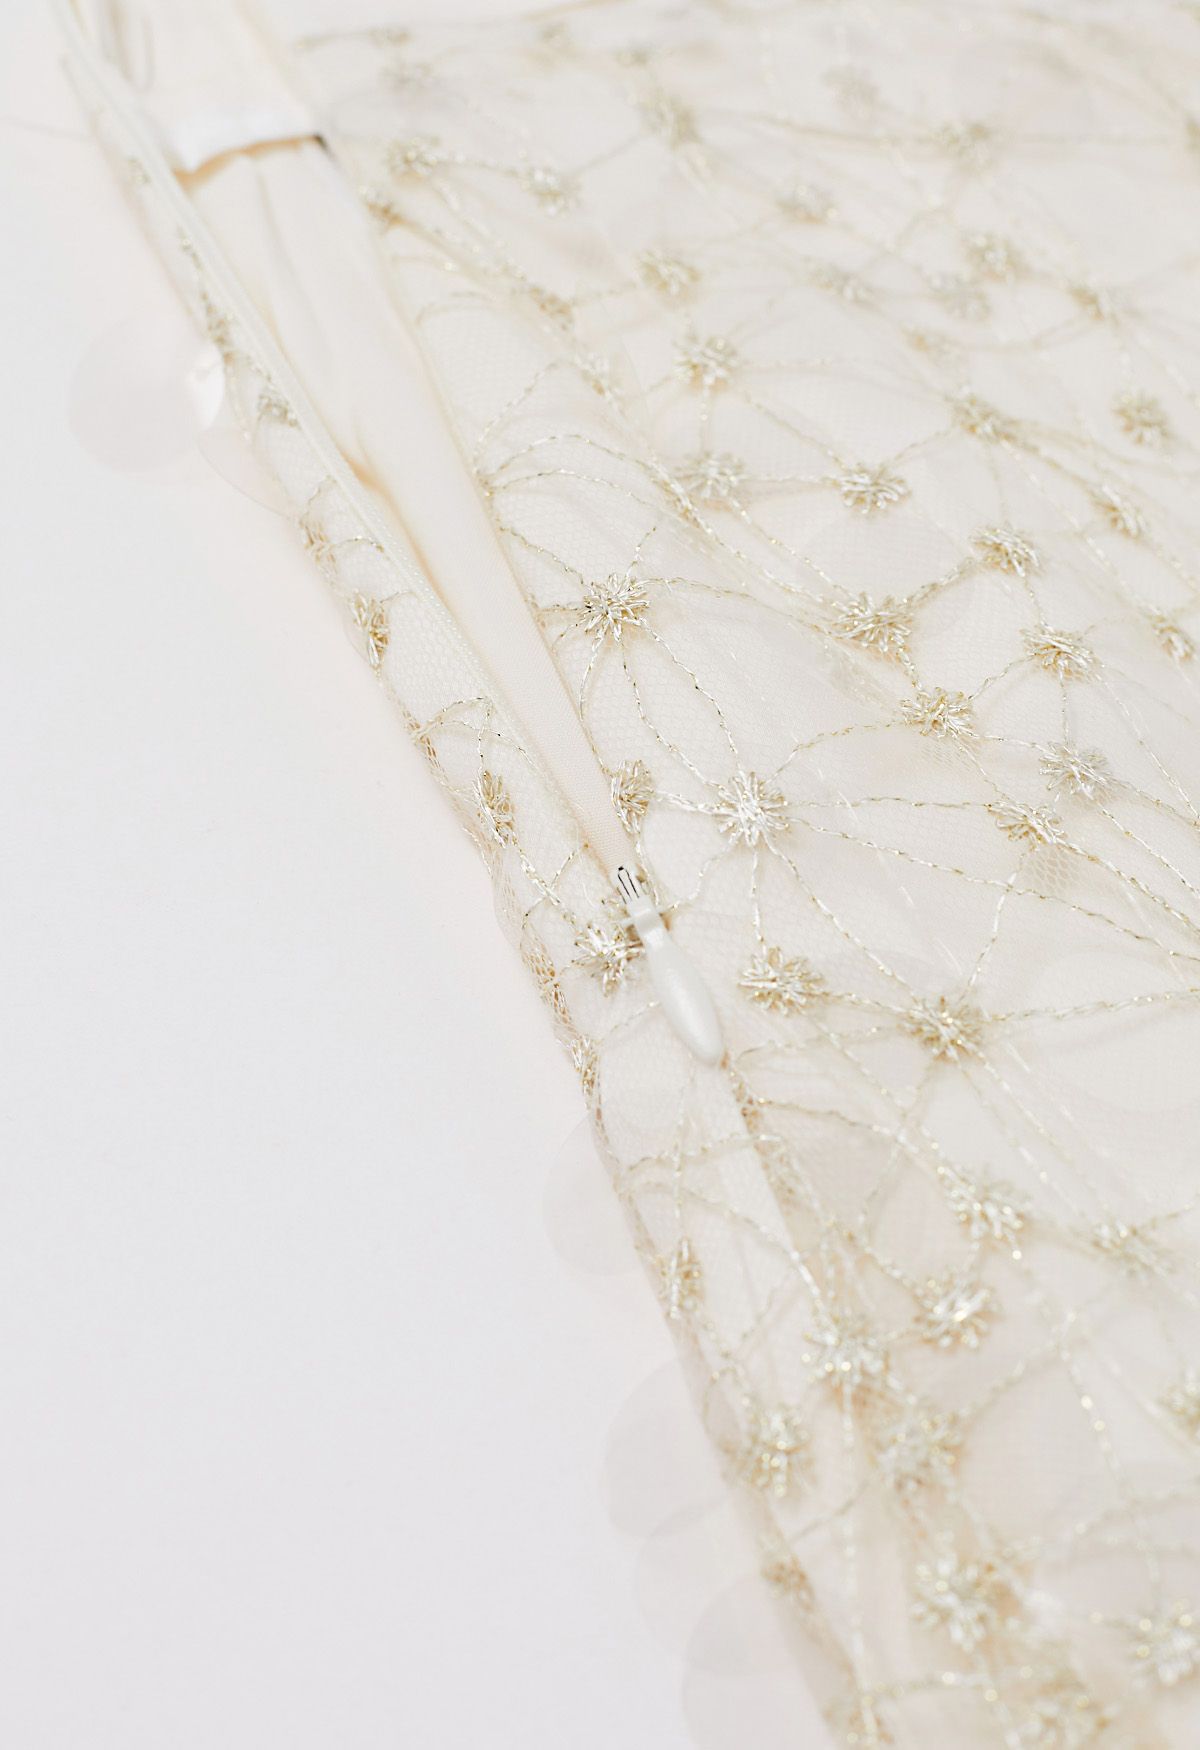 Falda de malla bordada con lentejuelas brillantes en color crema